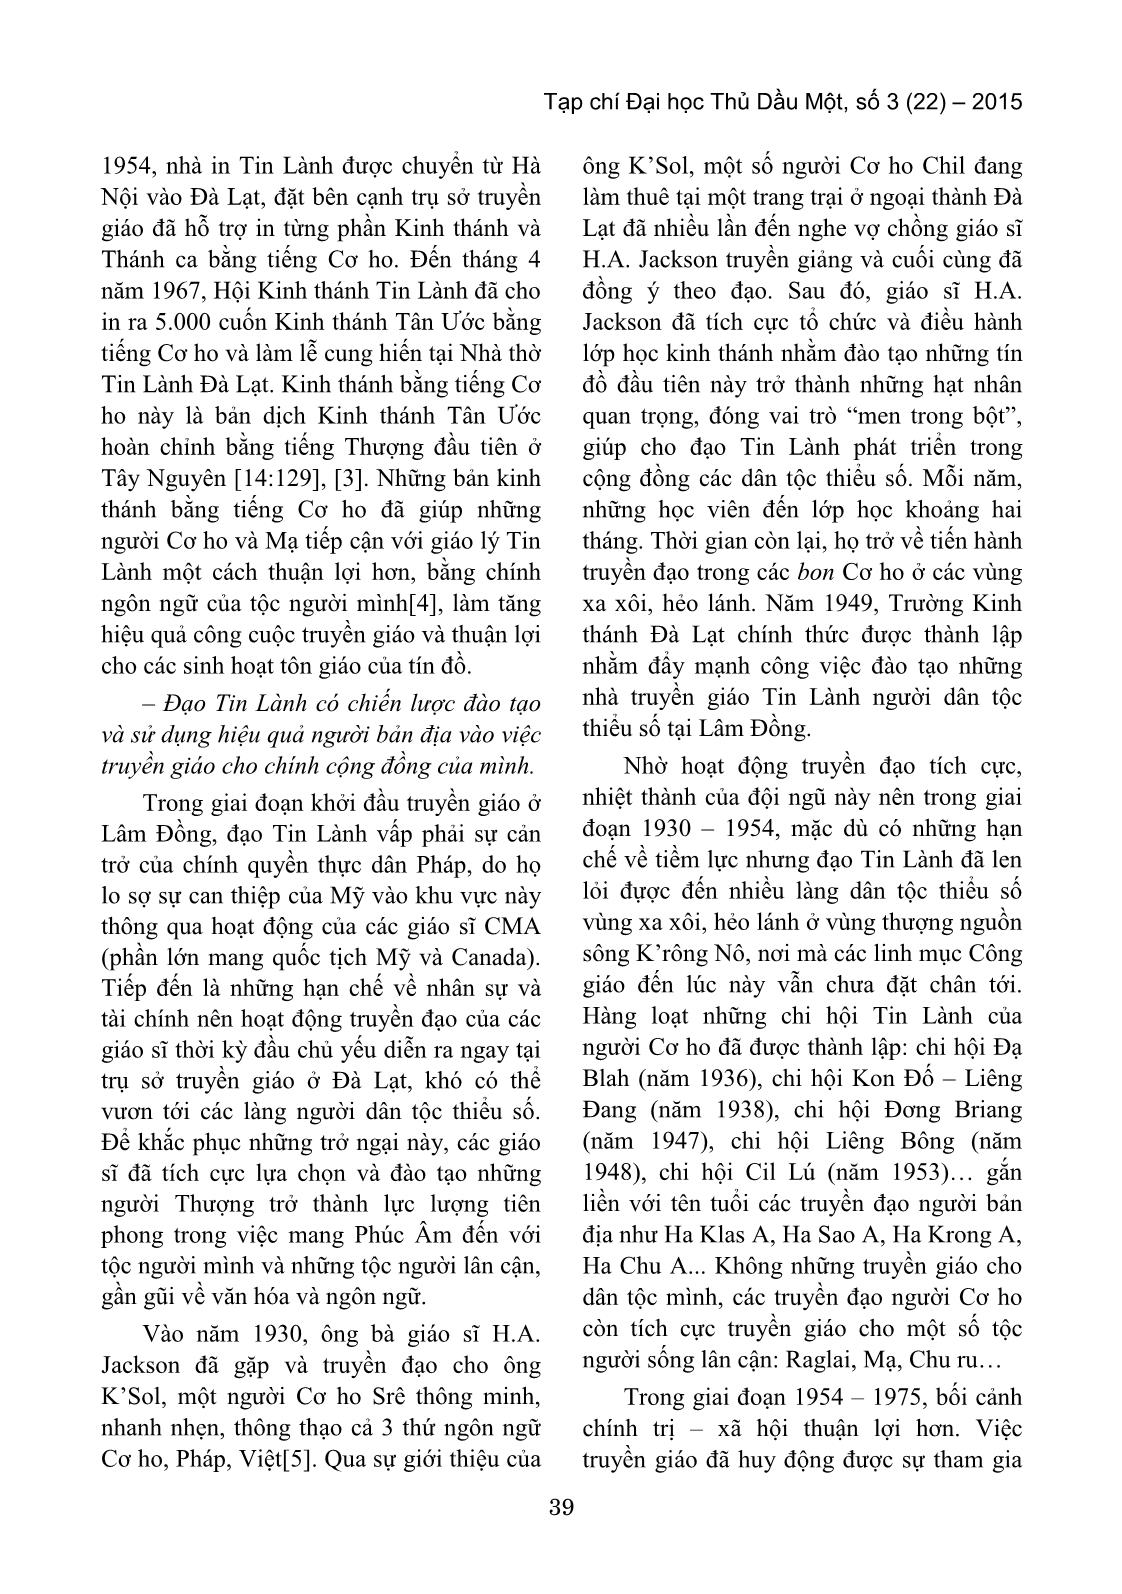 Phương pháp truyền giáo của đạo tin lành trong cộng đồng các dân tộc thiểu số ở Lâm Đồng trước năm 1975 trang 3